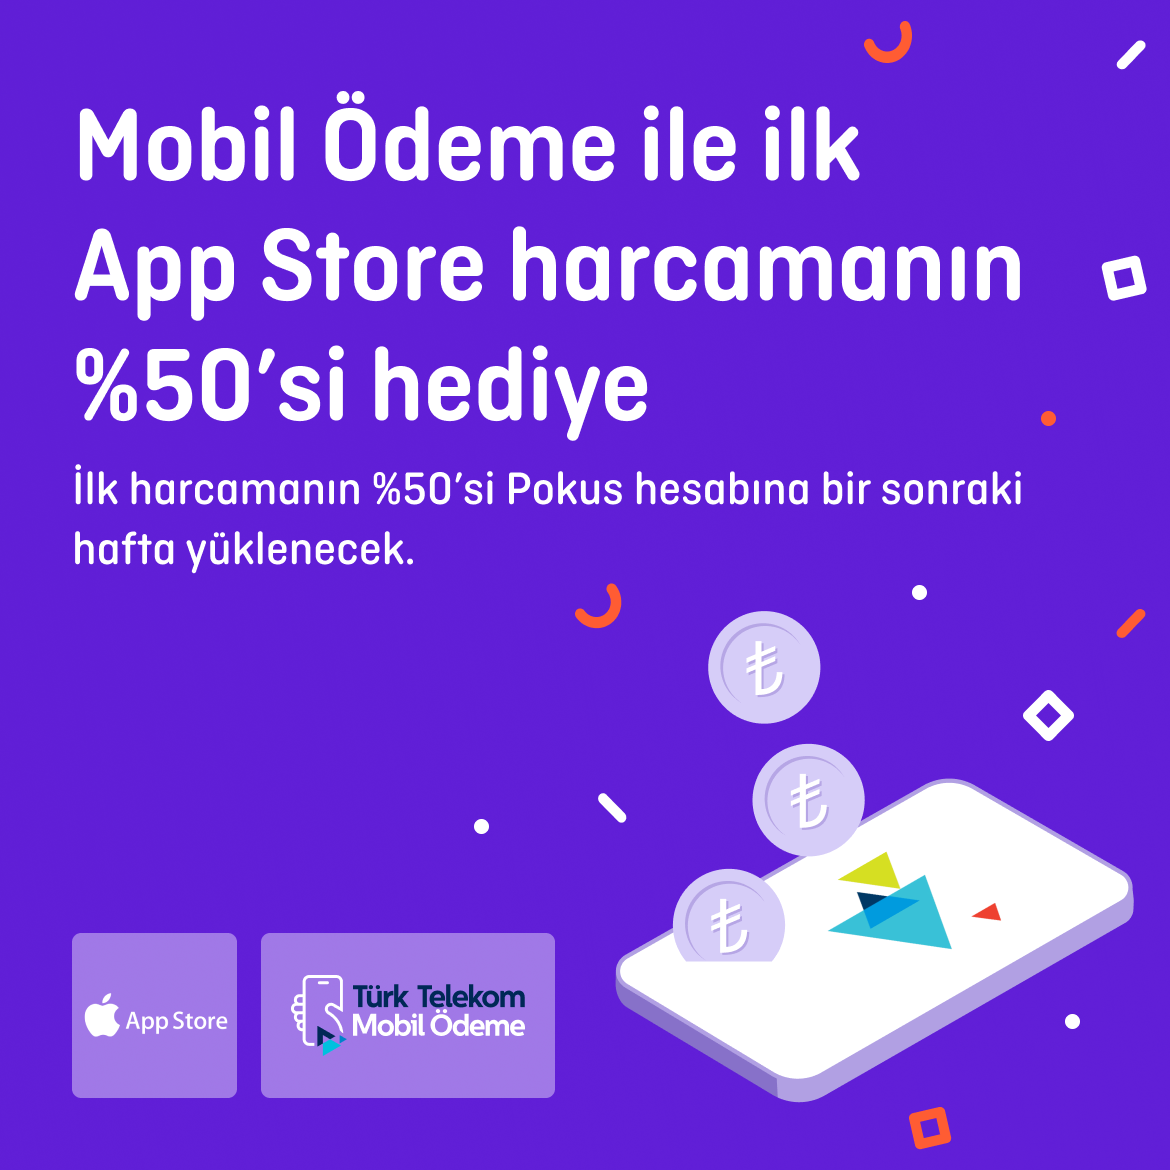 >Türk Telekom Mobil Ödemeyle tanışma zamanı! App Store’da mobil ödemeyle harca %50 nakit hediye kazan!